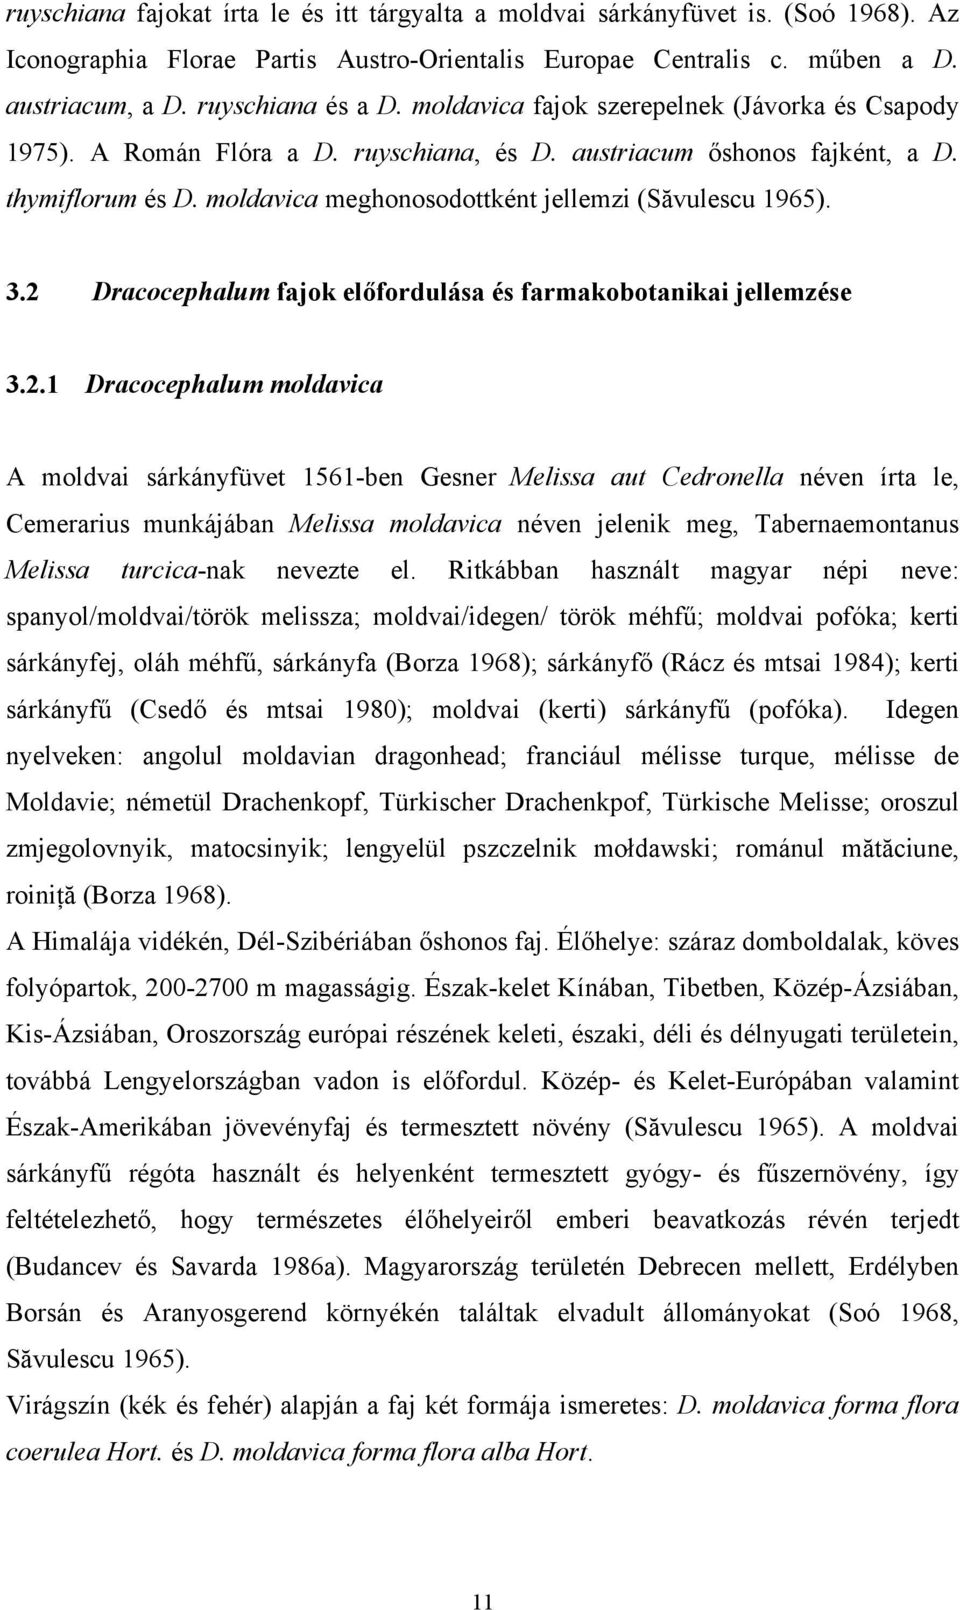 2 Dracocephalum fajok előfordulása és farmakobotanikai jellemzése 3.2.1 Dracocephalum moldavica A moldvai sárkányfüvet 1561-ben Gesner Melissa aut Cedronella néven írta le, Cemerarius munkájában